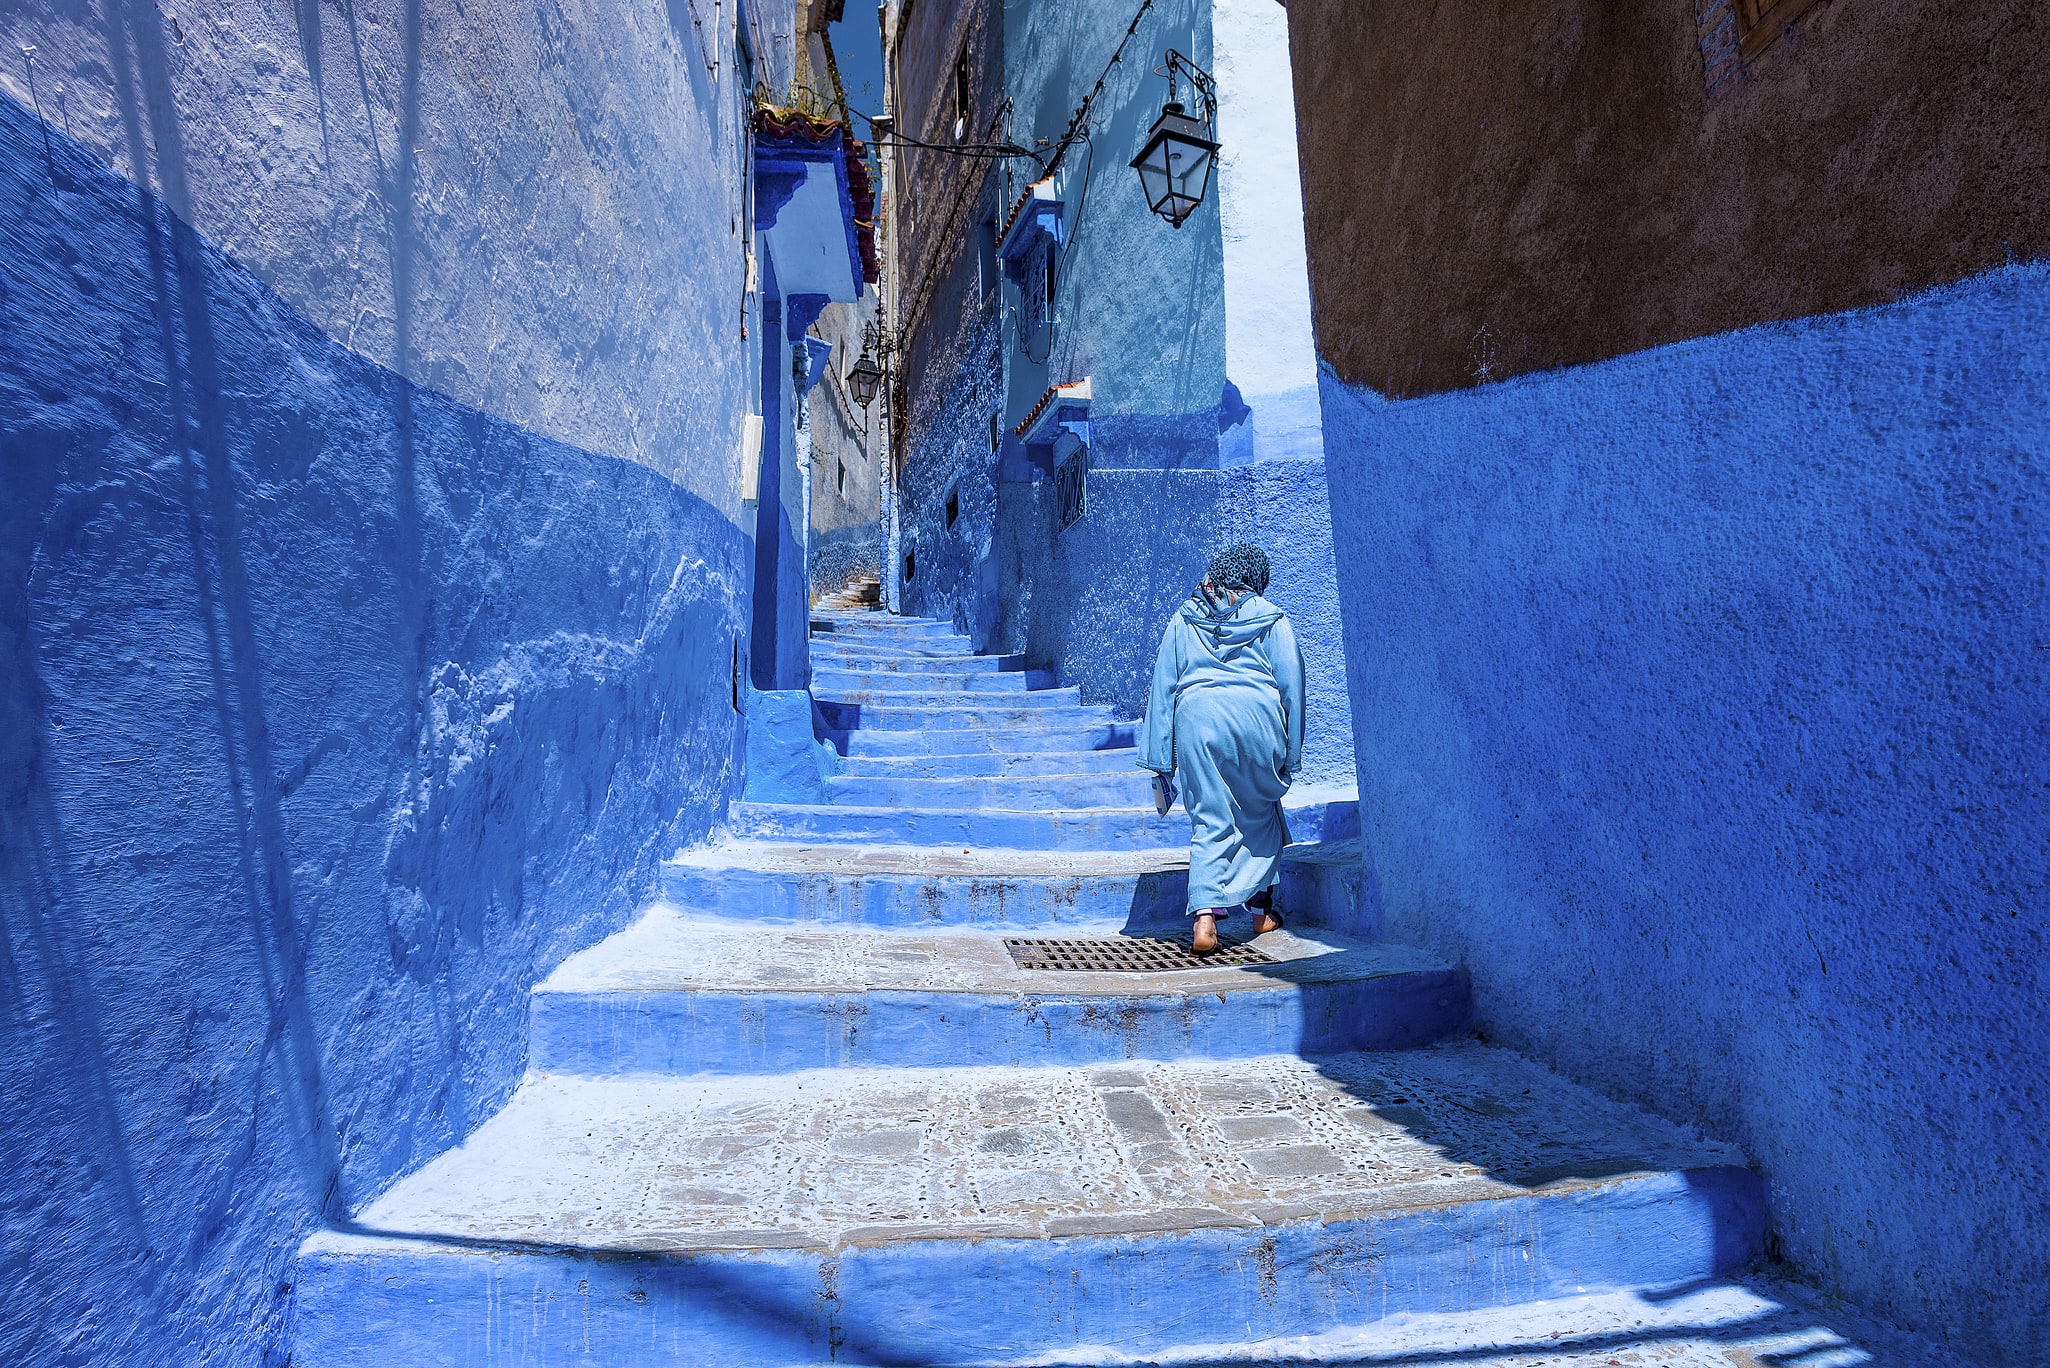 Chauen, Marruecos